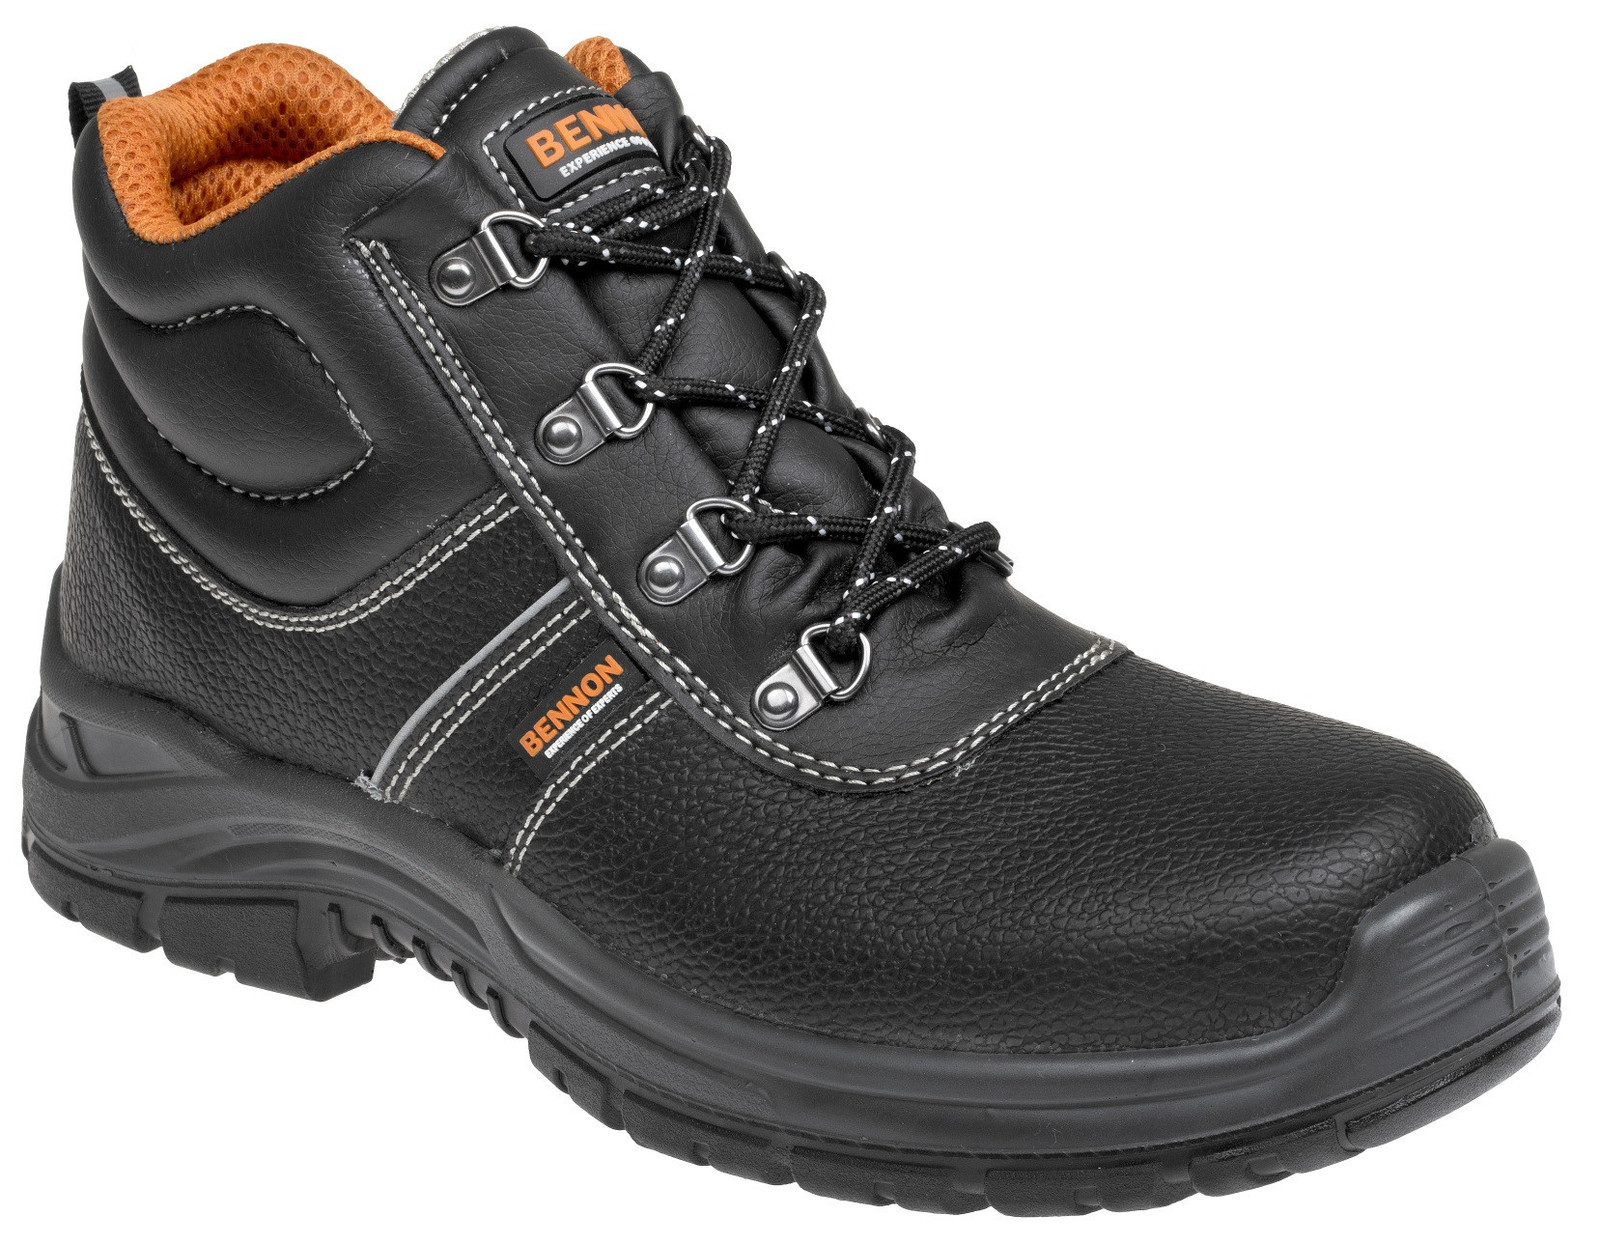 Bezpečnostná obuv Bennon Basic S3 - veľkosť: 46, farba: čierna